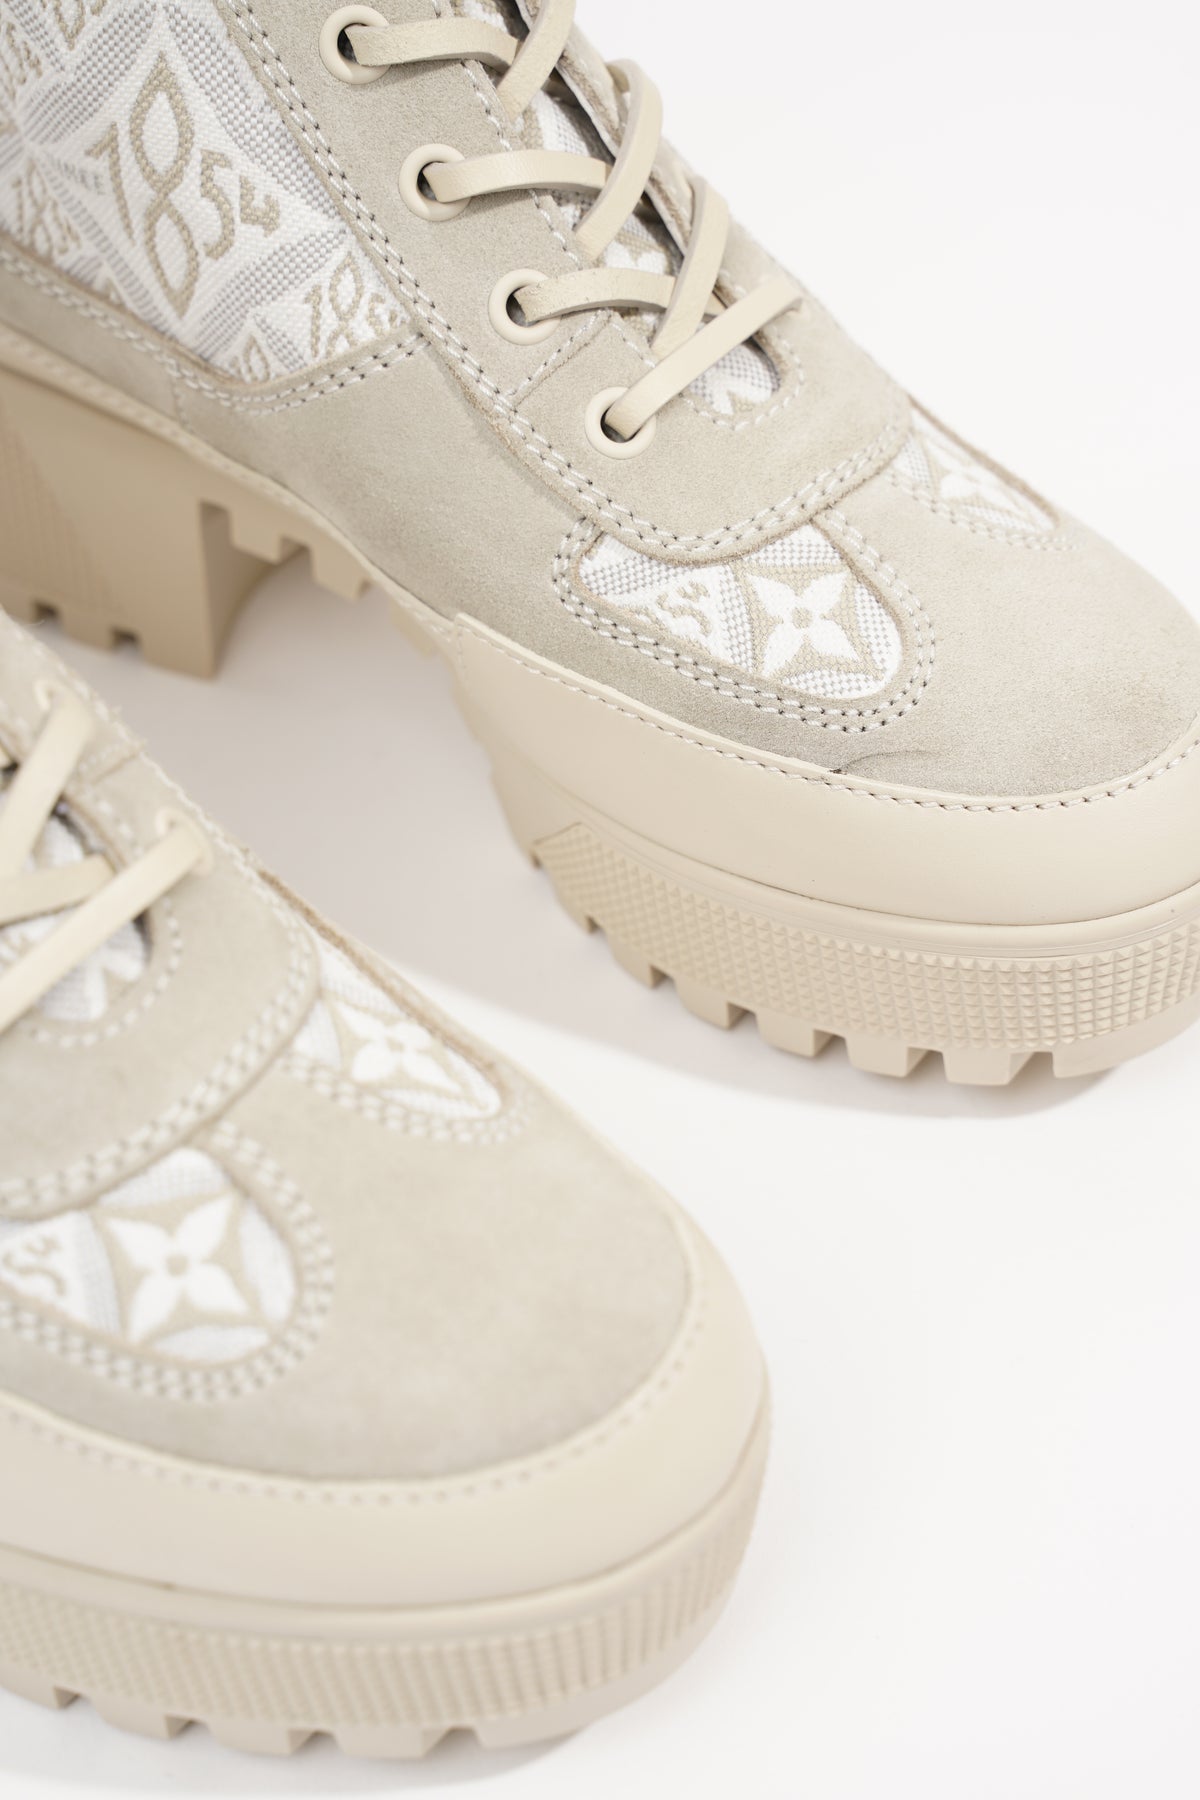 Louis Vuitton Laureate Platform Desert Olive Boots SZ 36.5 - ShopperBoard